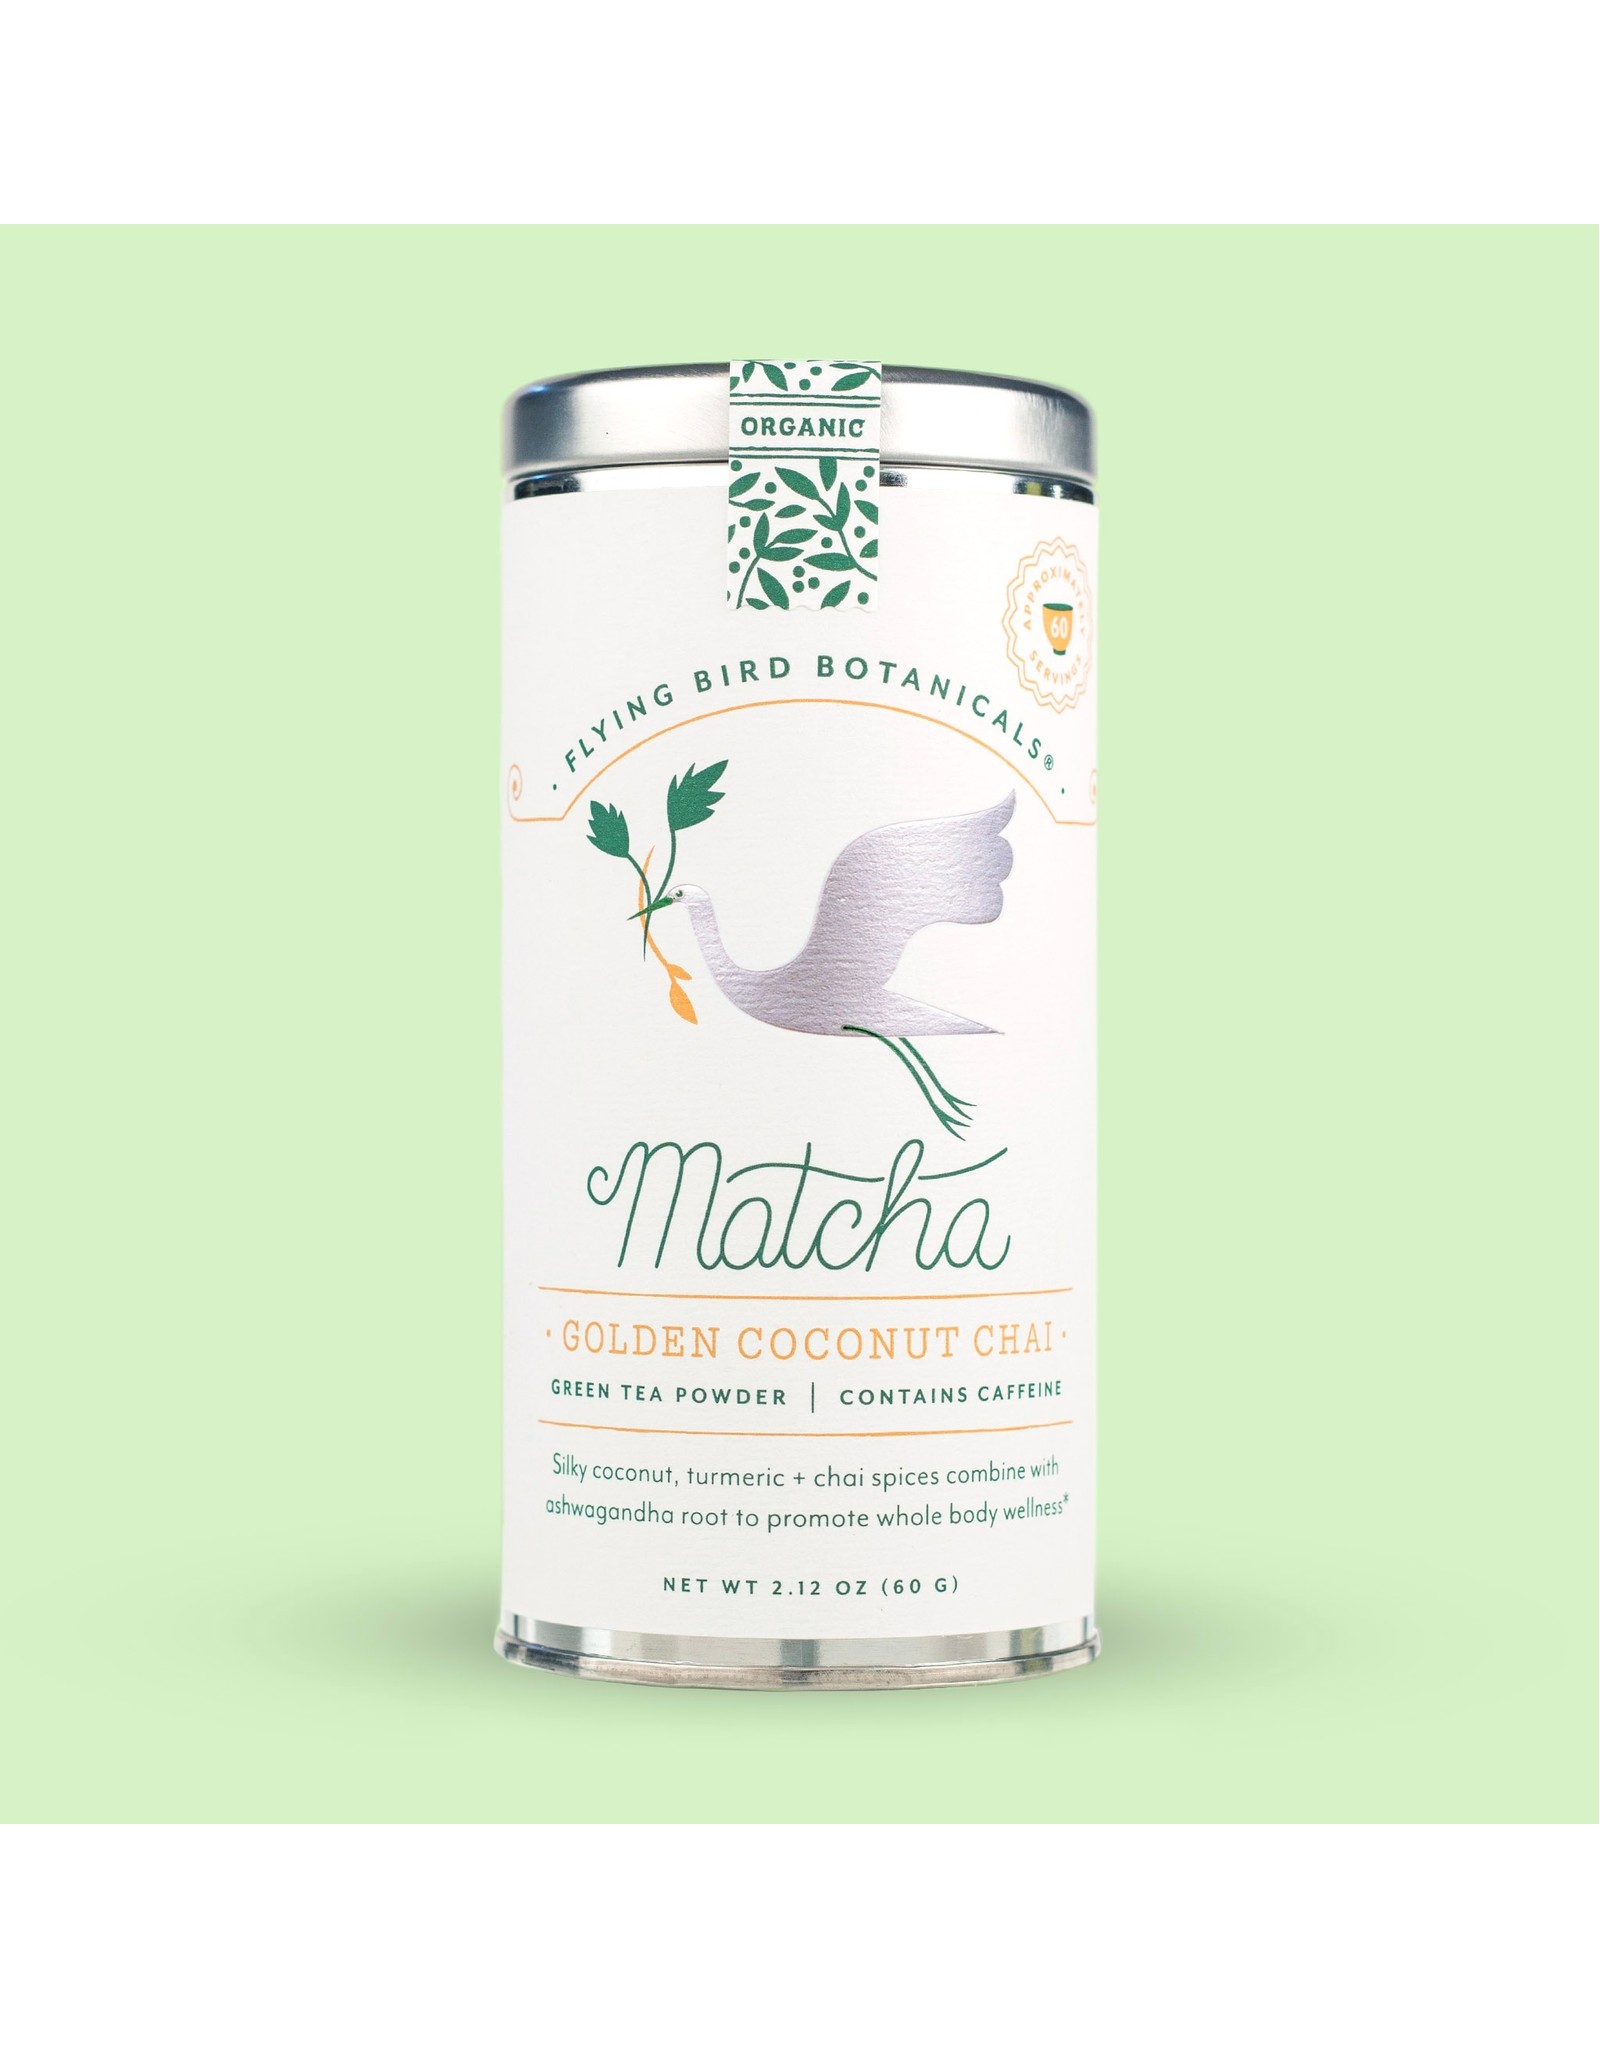 Flying Bird Botanical's Cacao & Matcha